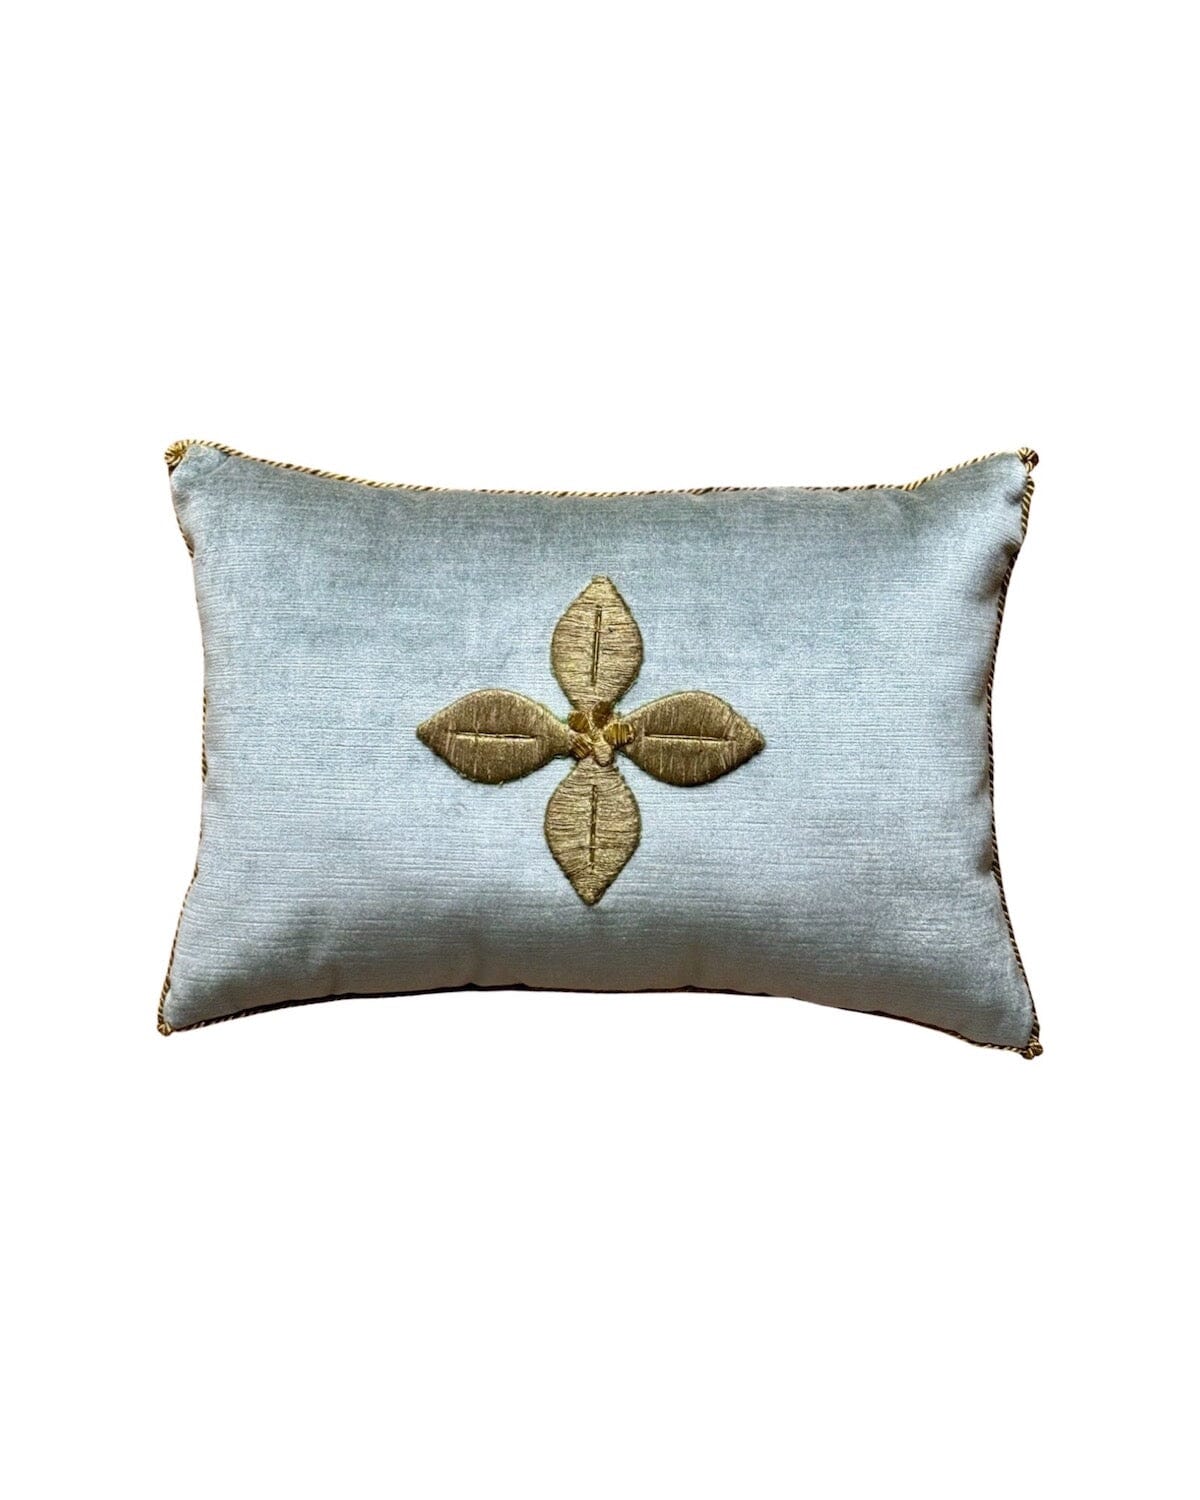 Antique European Raised Gold Metallic Embroidery (#E021724 | 11 x 16") New Pillows B. Viz Design 